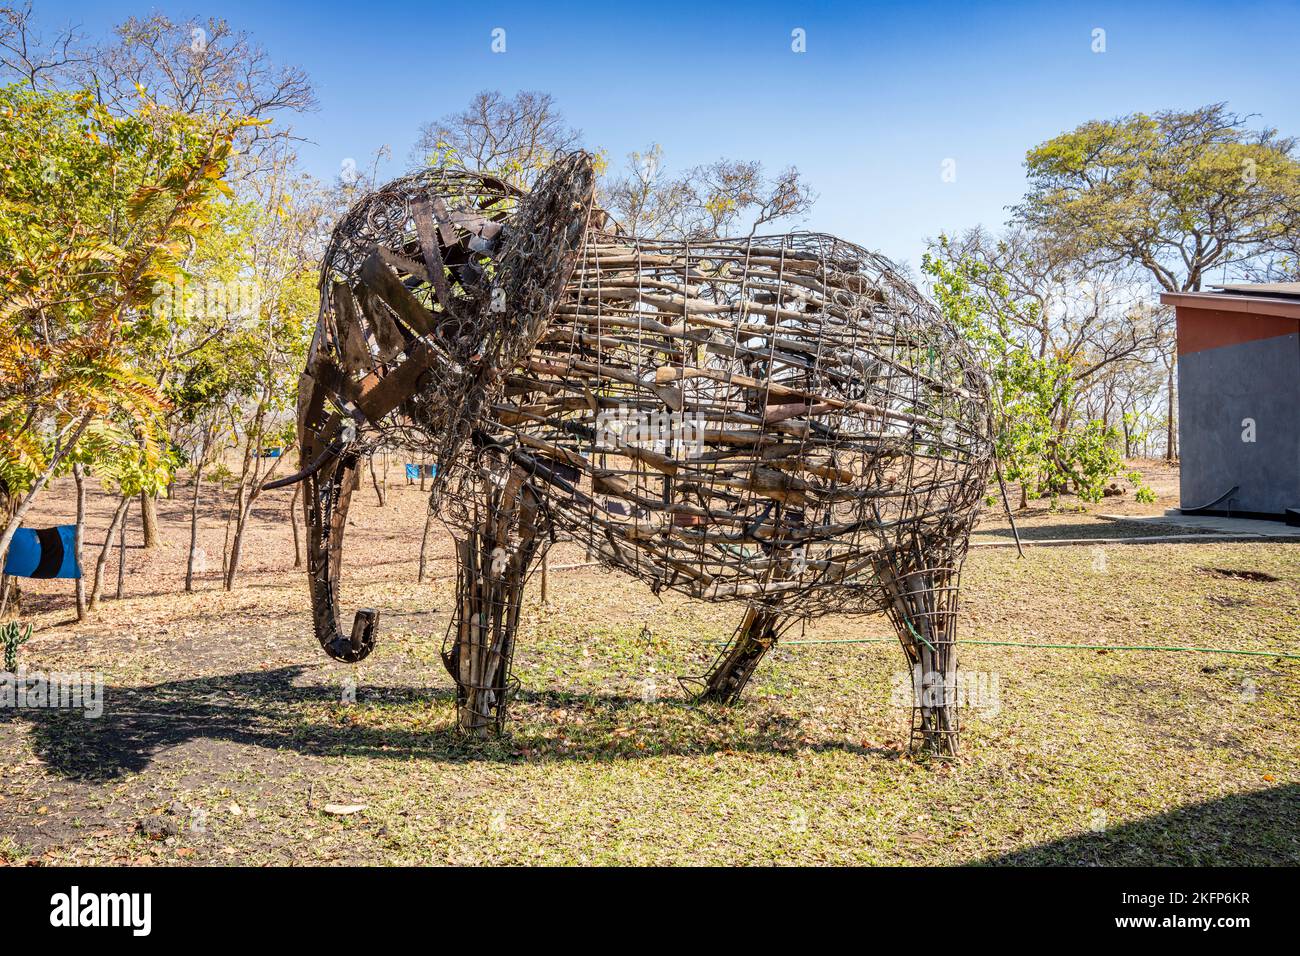 Elefantenskulptur aus Gewehren, Messern und Fallen, die von Wilderern im Naturschutzgebiet Nkhotakota, Malawi, konfisziert wurden Stockfoto